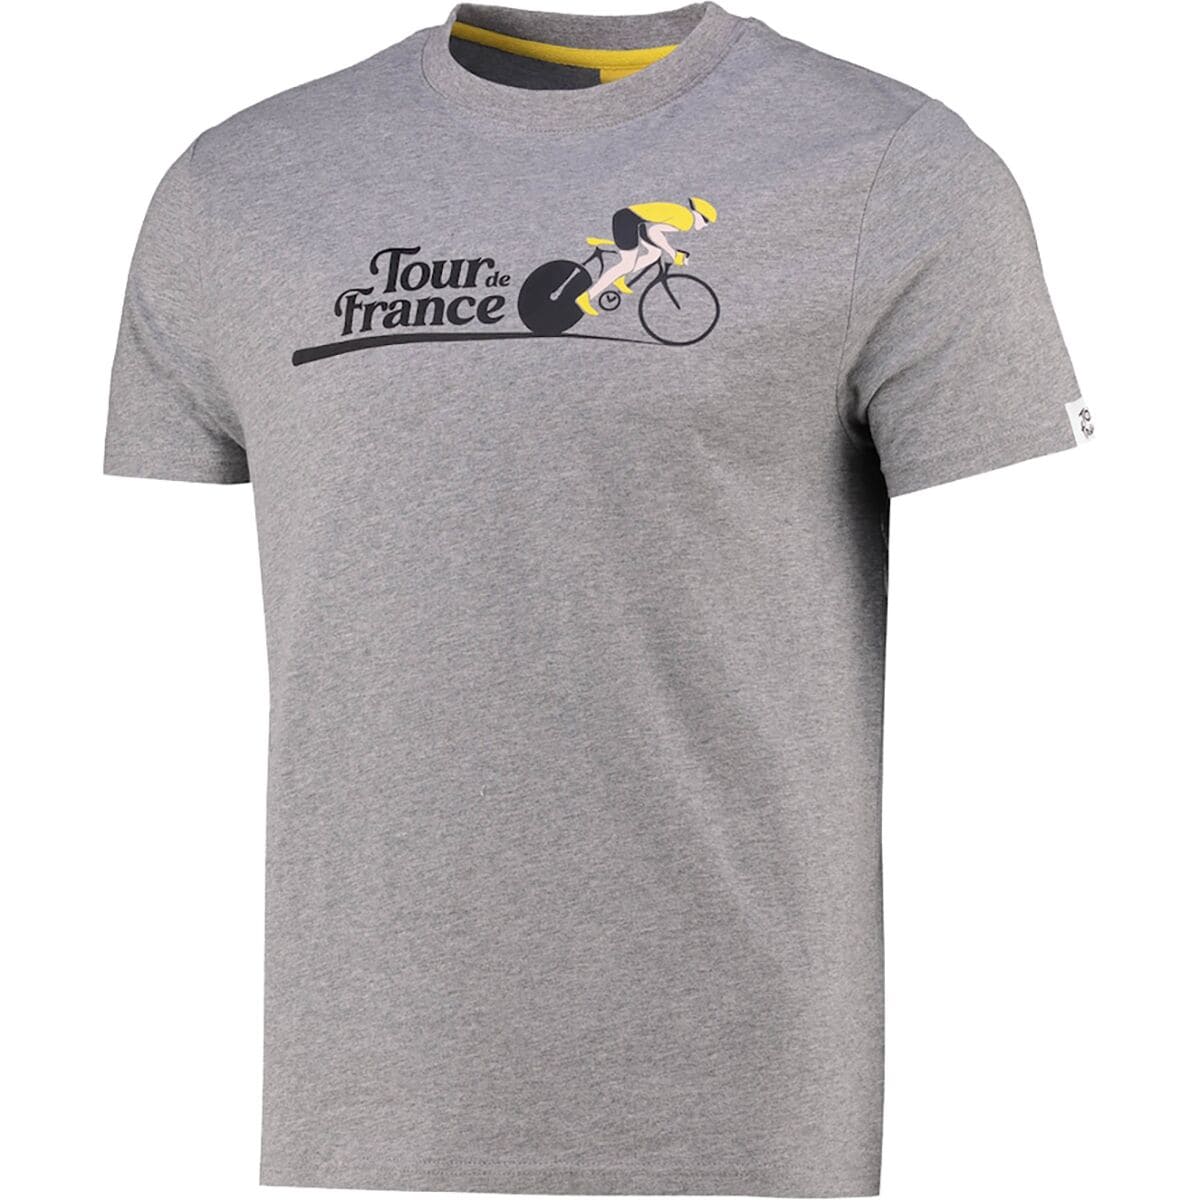 Tour de France Graphic T-Shirt - Men's